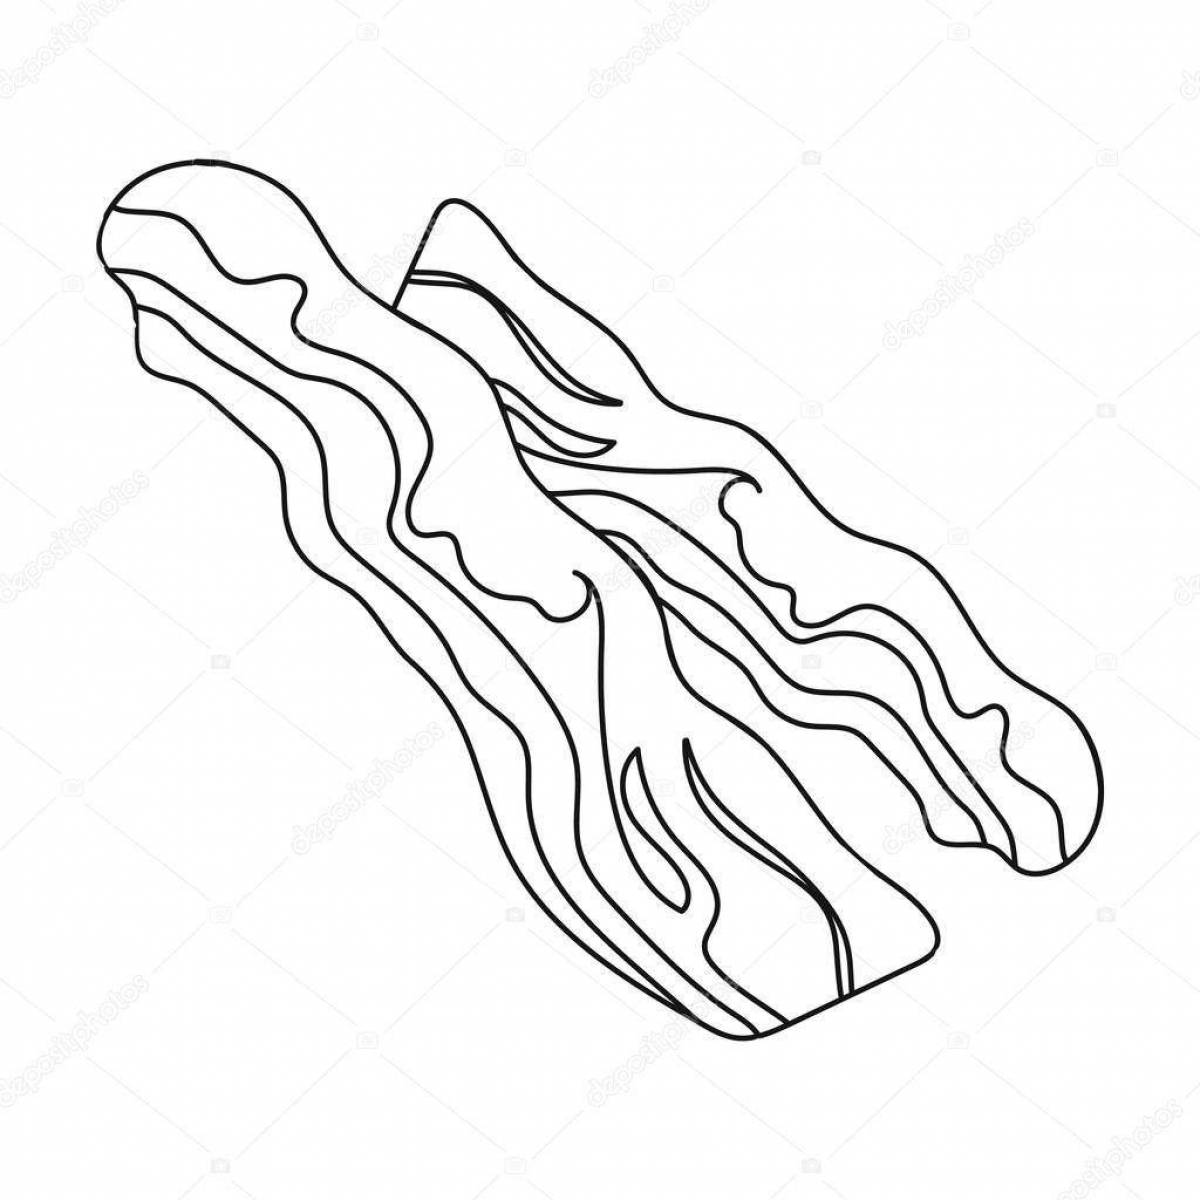 Seductive bacon coloring page